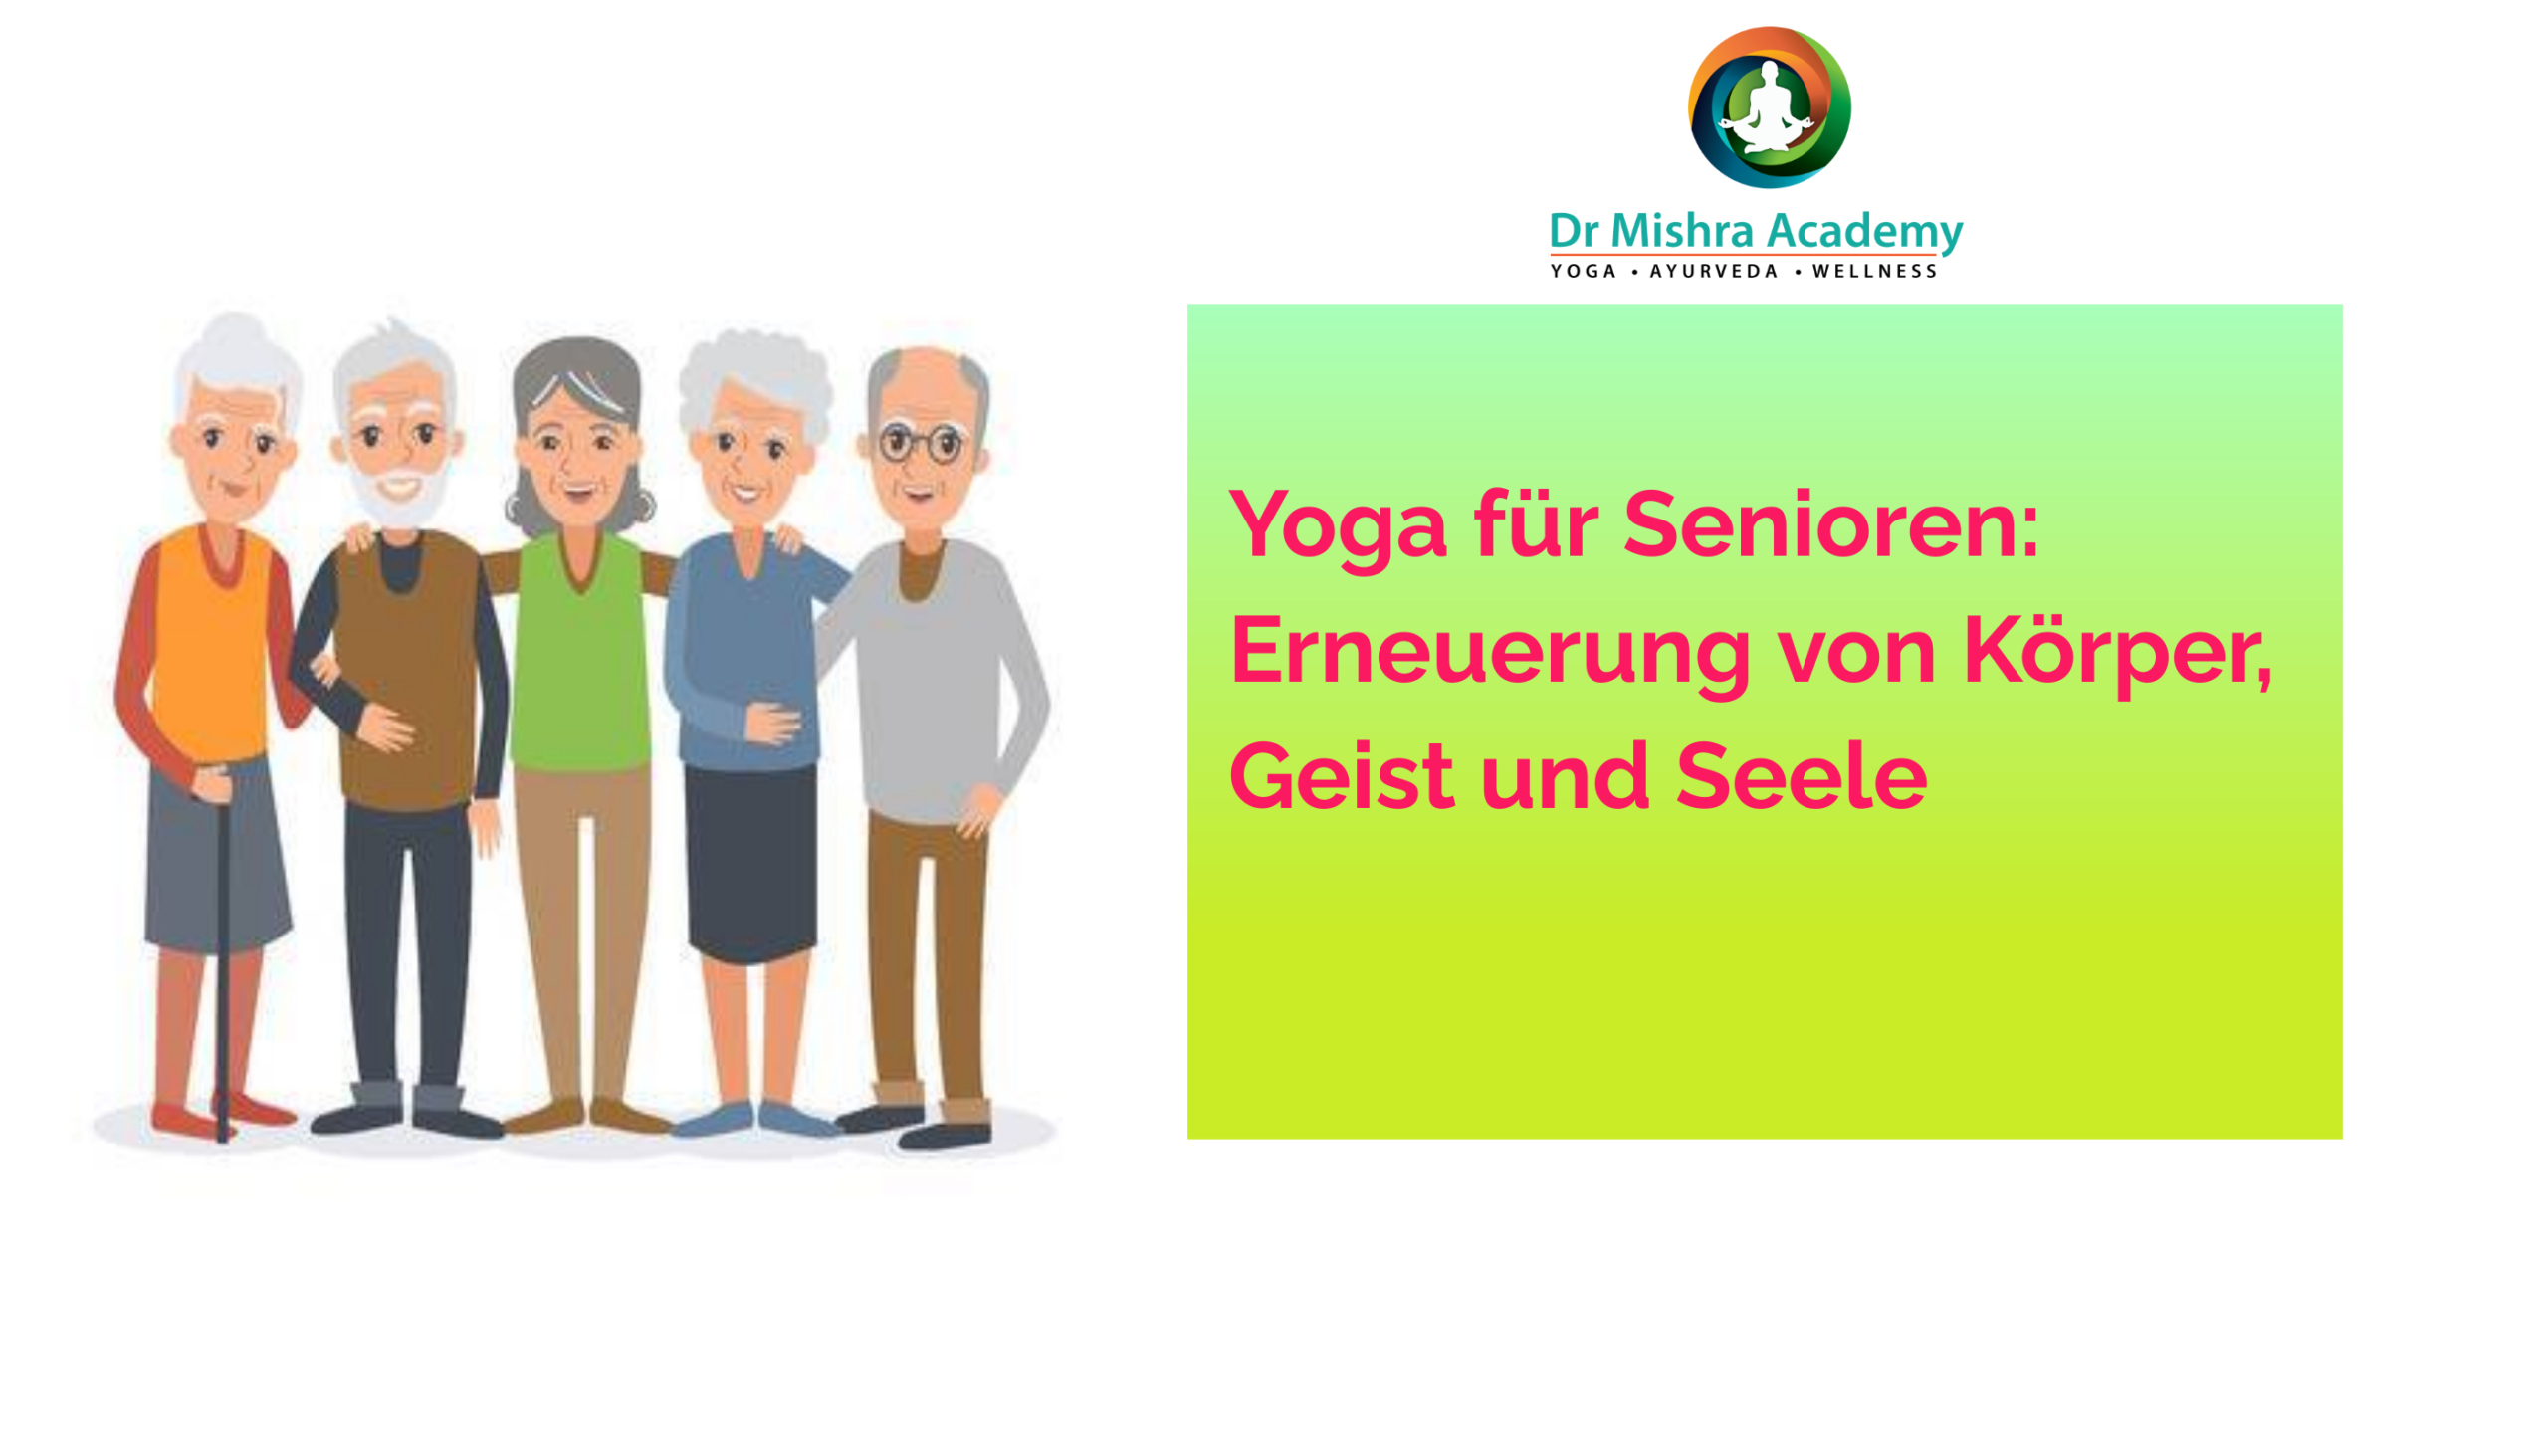 Yoga für Senioren: Erneuerung von Körper, Geist und Seele